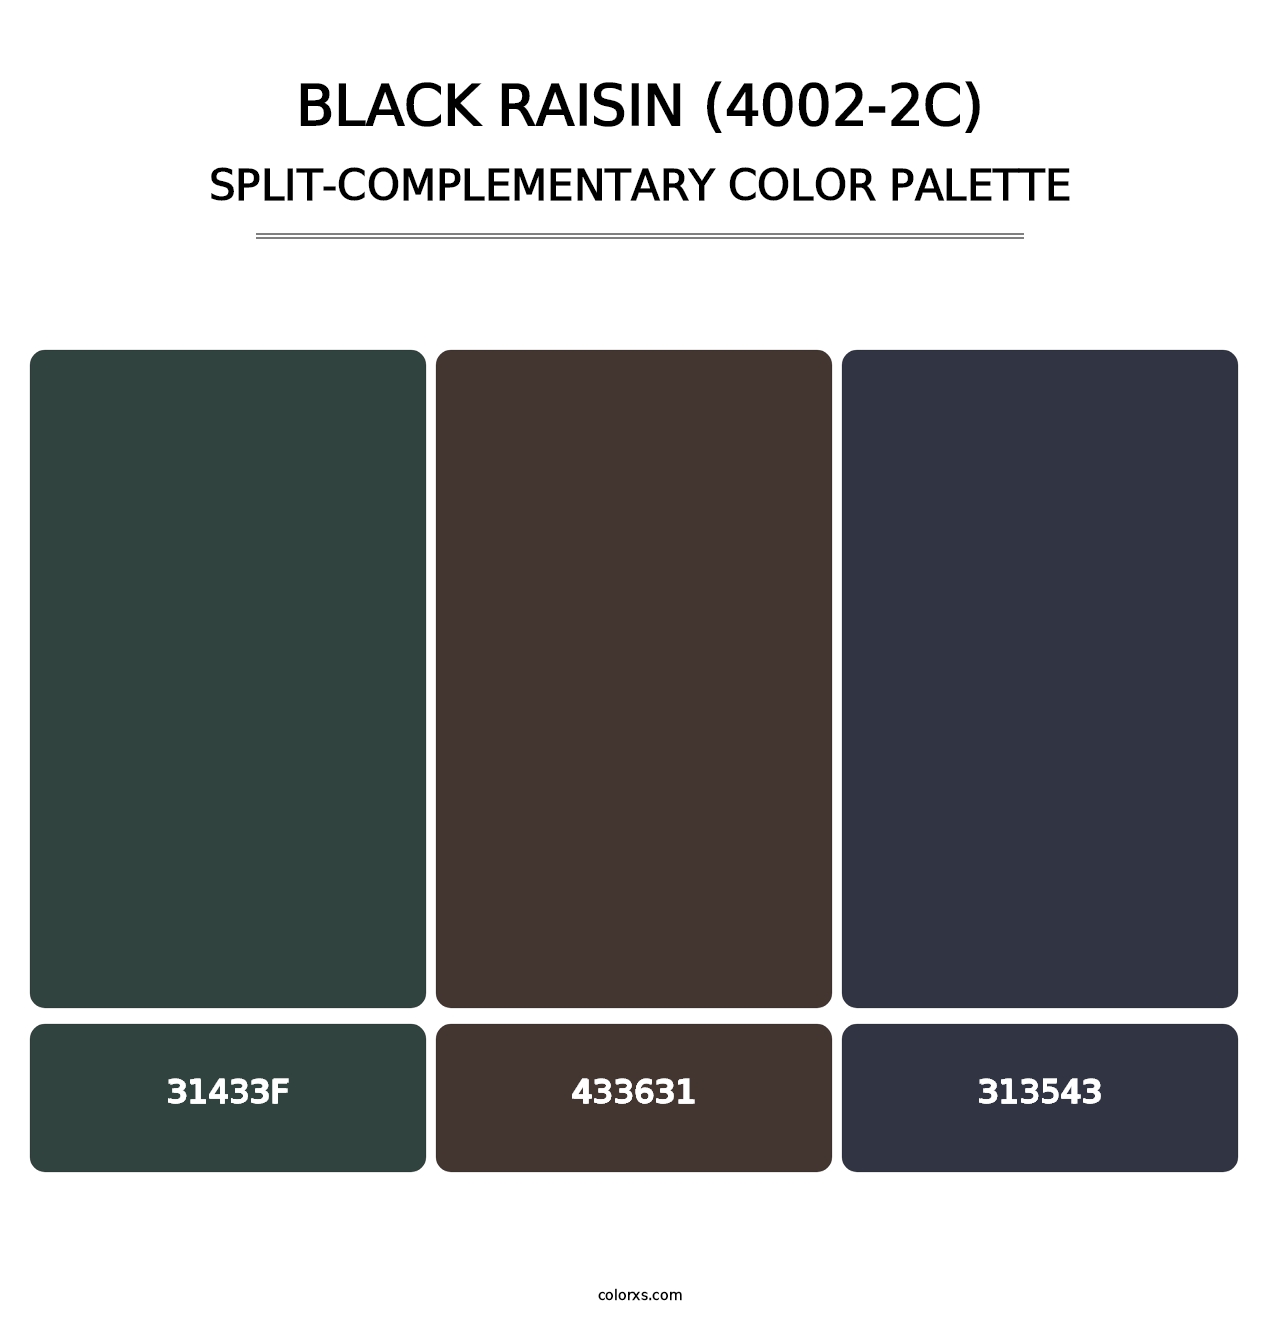 Black Raisin (4002-2C) - Split-Complementary Color Palette